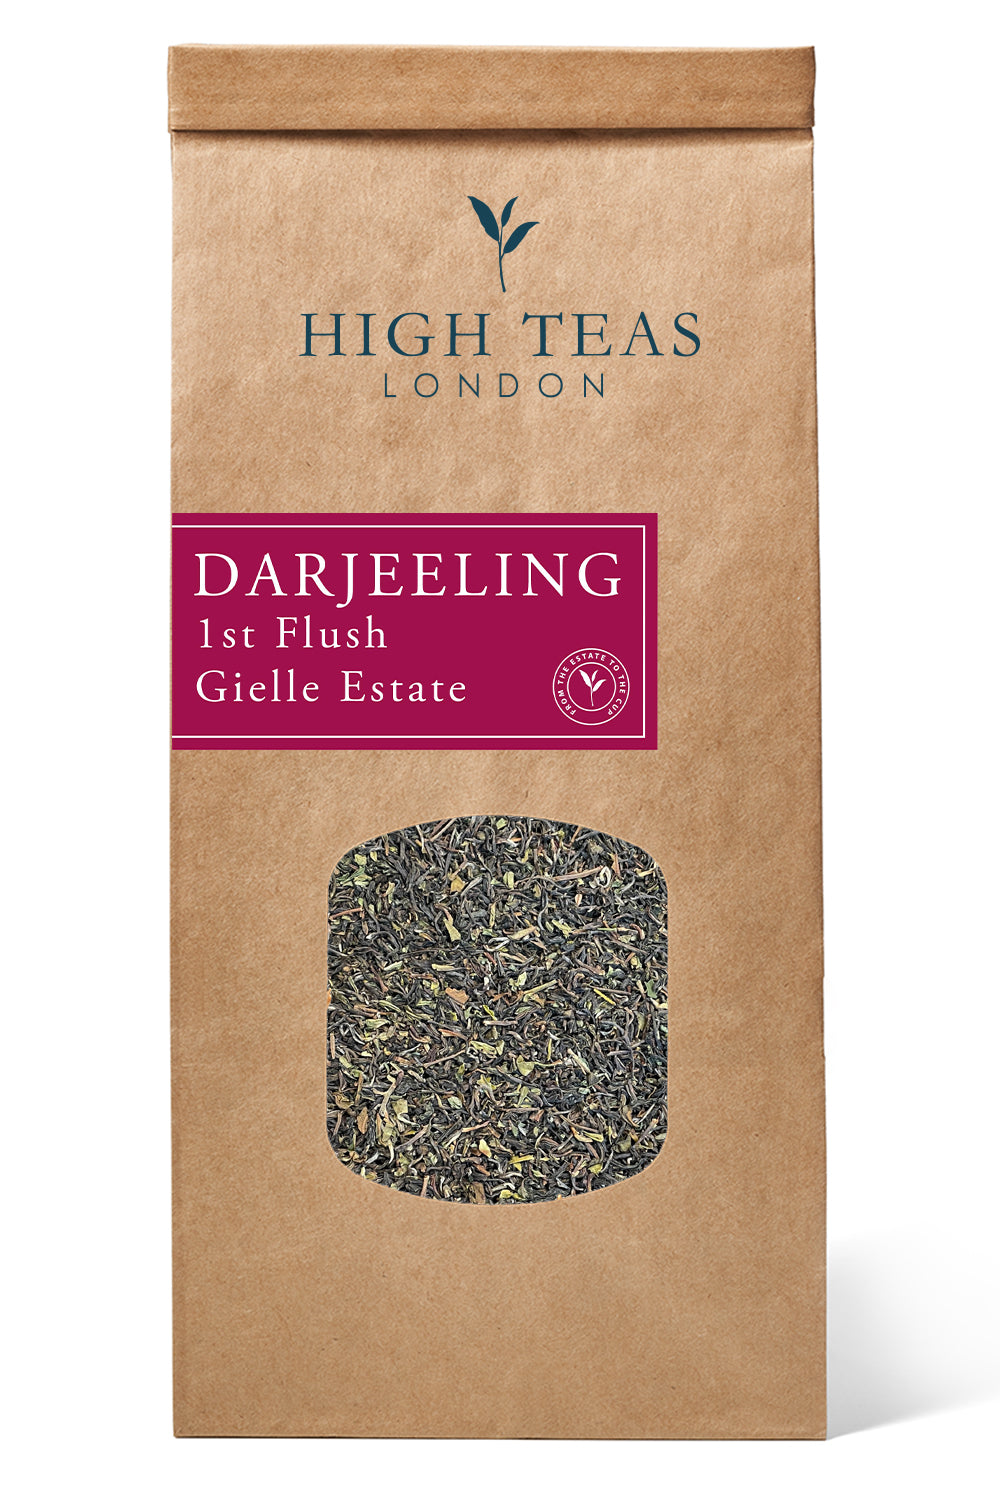 Darjeeling 1st Flush Gielle Estate-250g-Loose Leaf Tea-High Teas